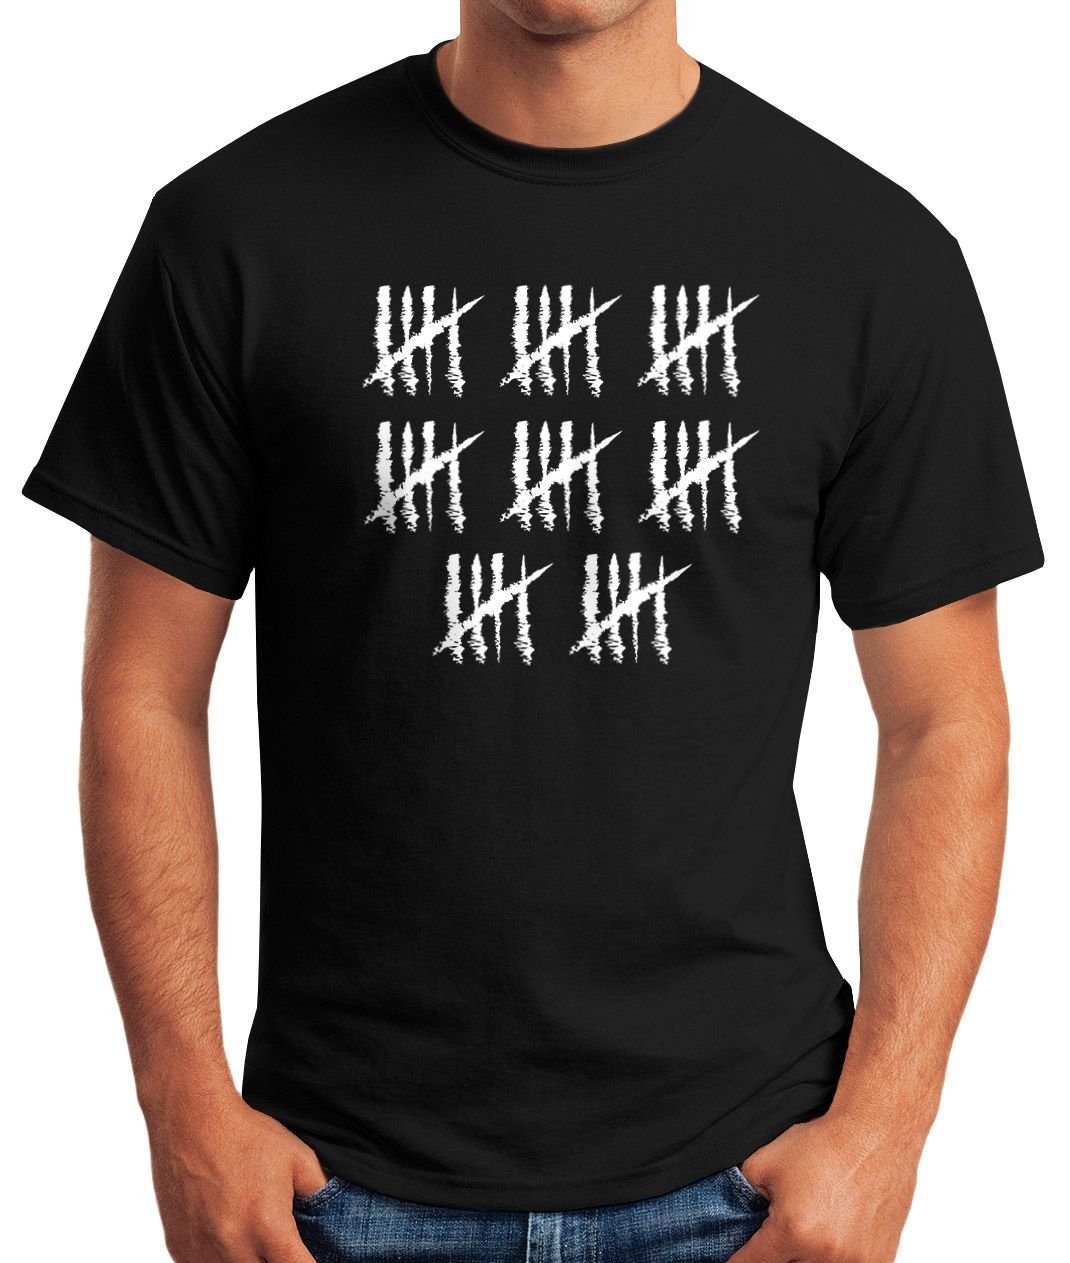 MoonWorks Print-Shirt Object] Geburtstag T-Shirt schwarz Moonworks® Print Geschenk mit Striche Jahrgang Fun-Shirt [object 40 Herren Alter Jubiläum Strichliste